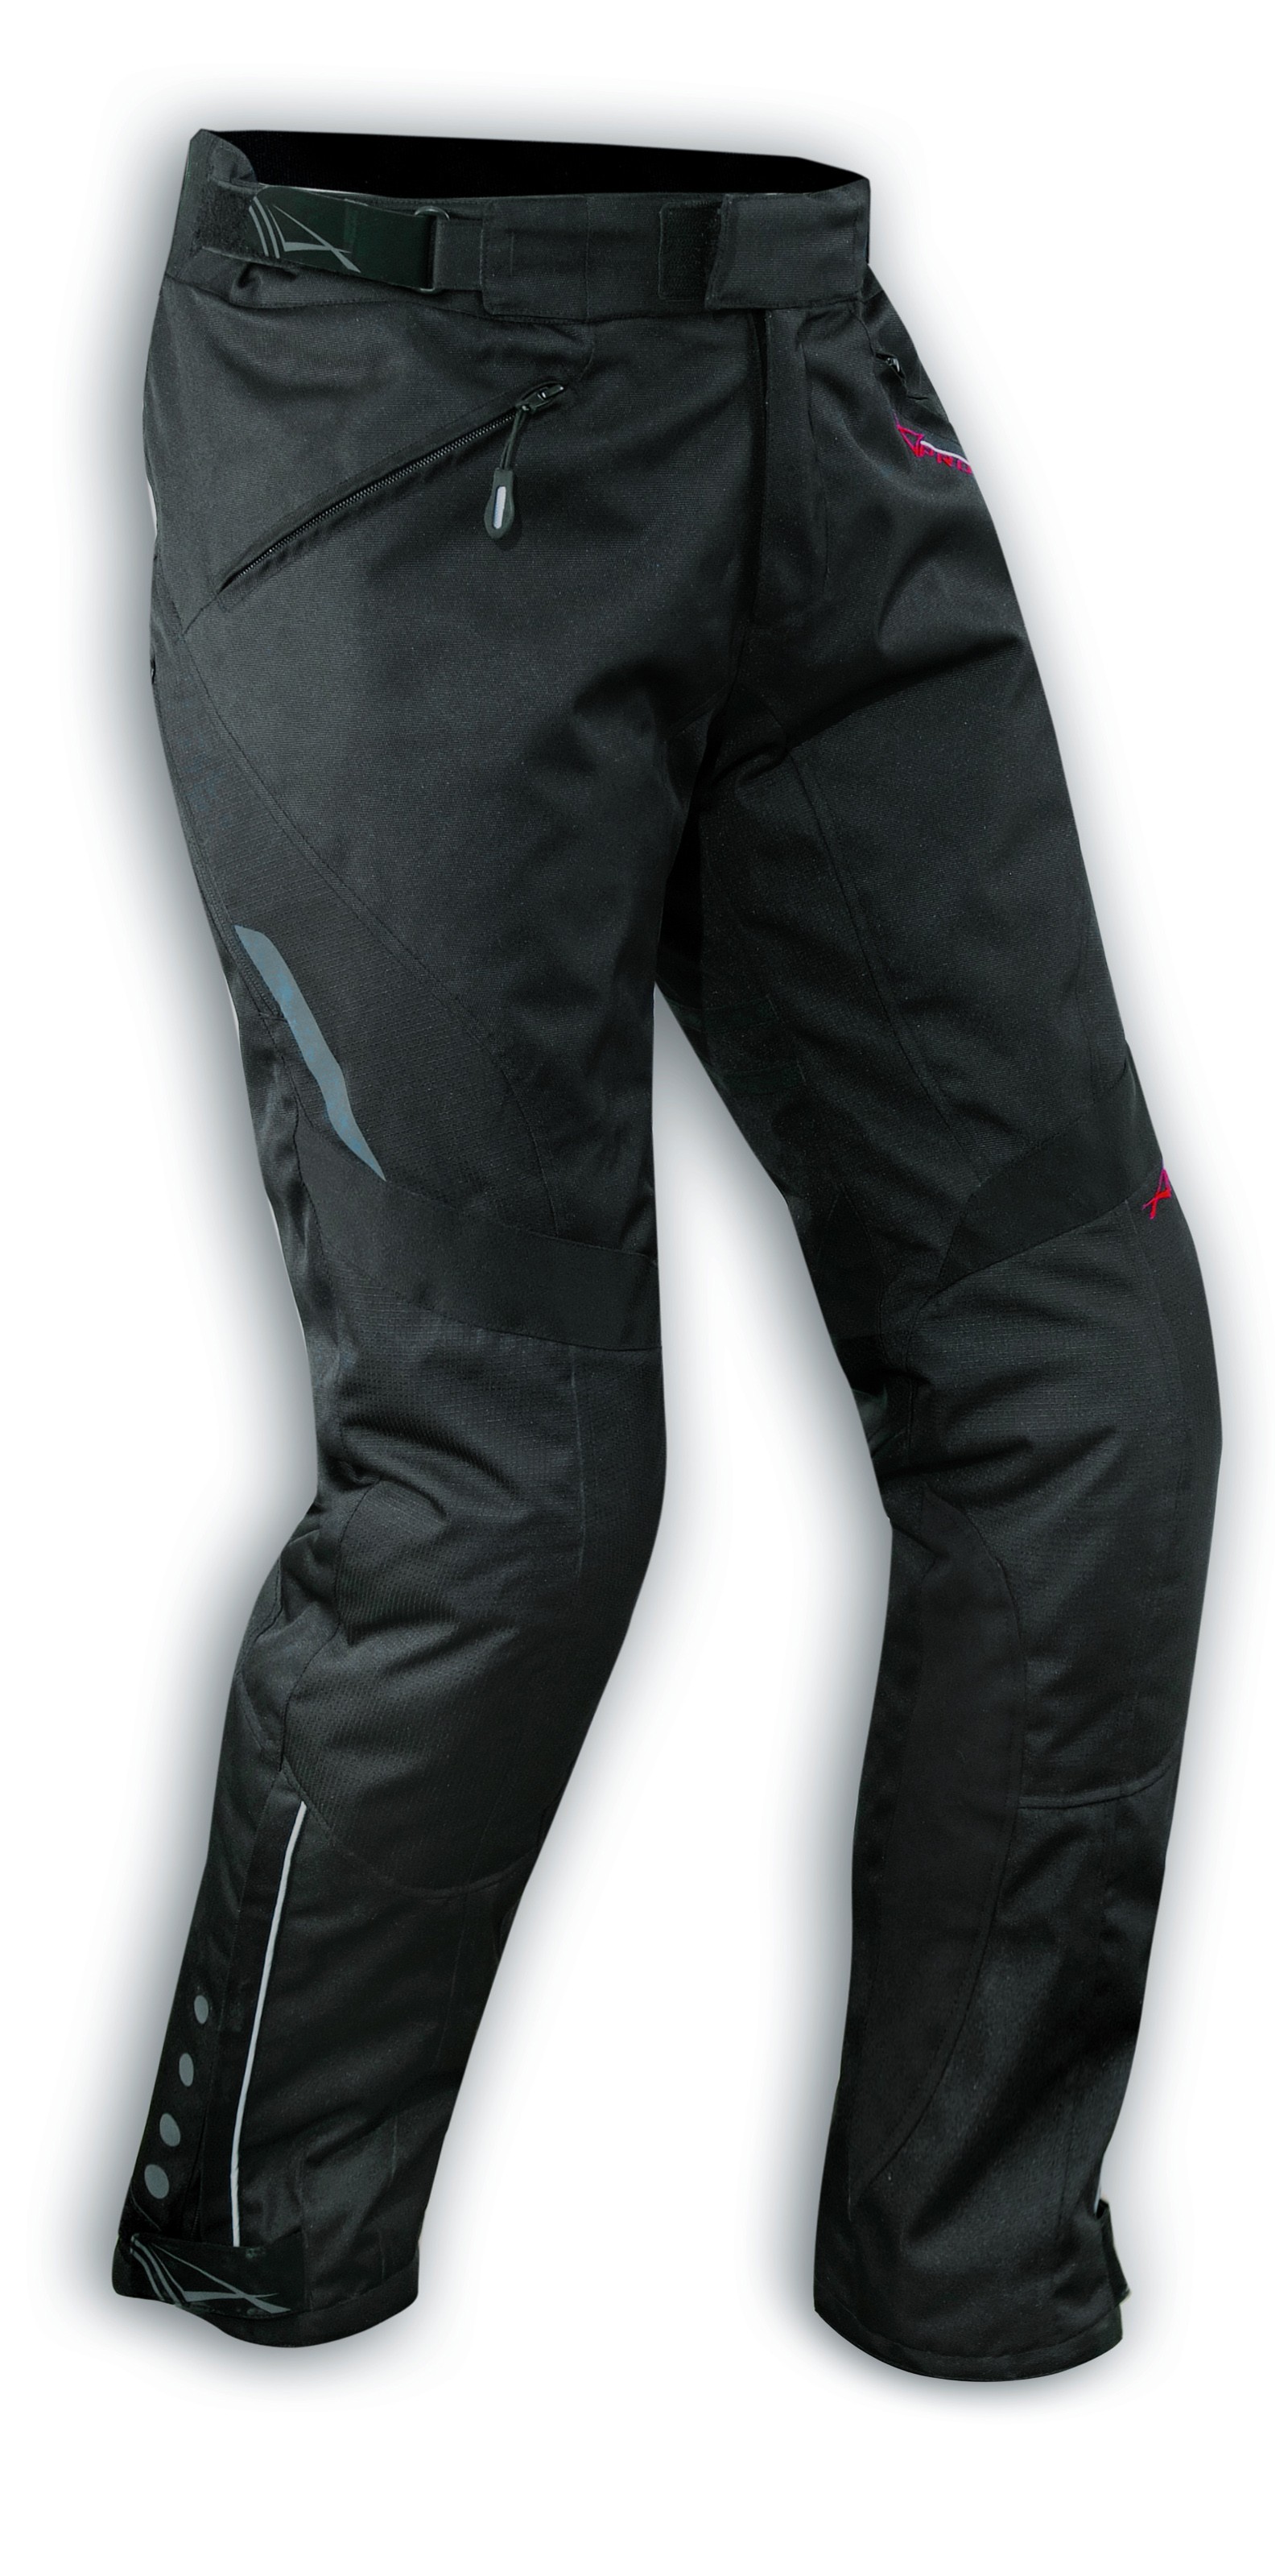 Waterproof Motorcycle Motorbike Textile Thermal Long leg Fit Trousers 